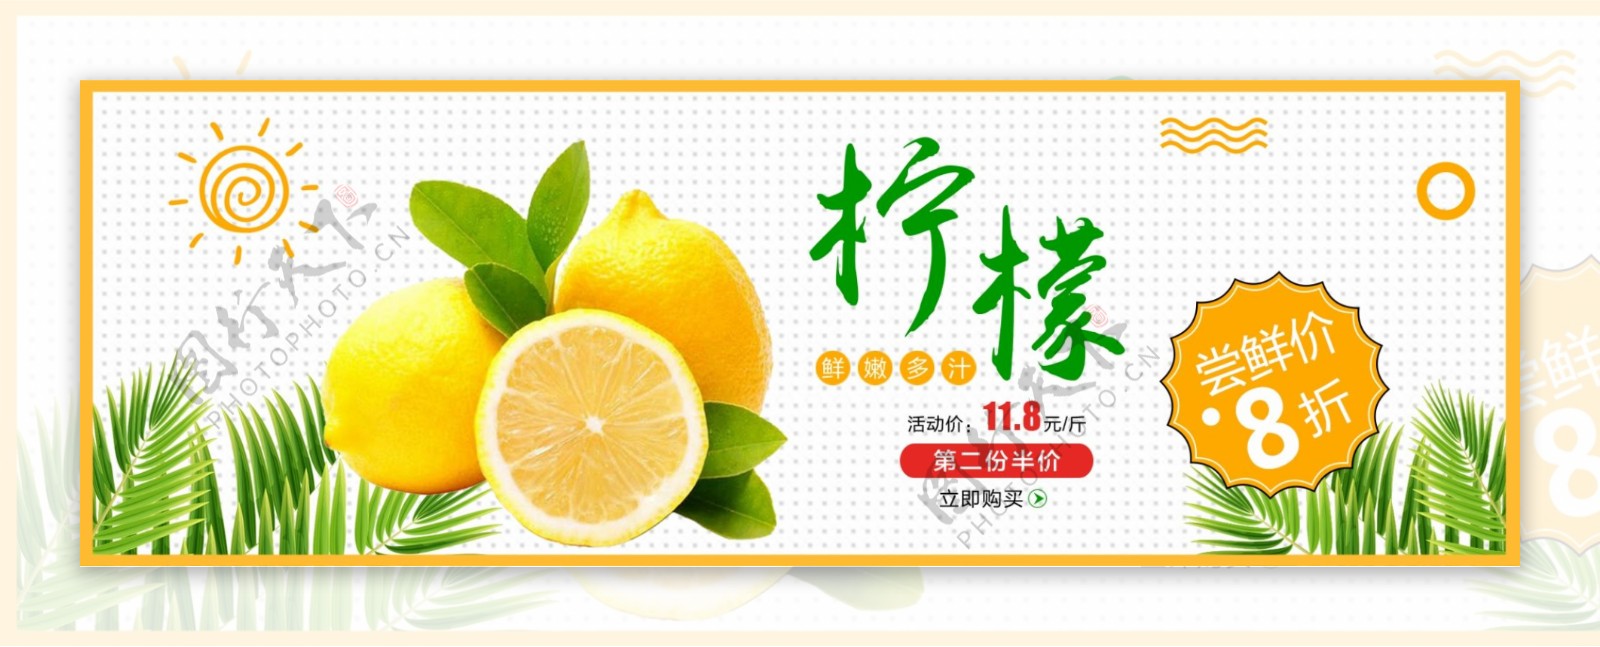 清新绿叶柠檬水果生鲜食品淘宝banner电商海报